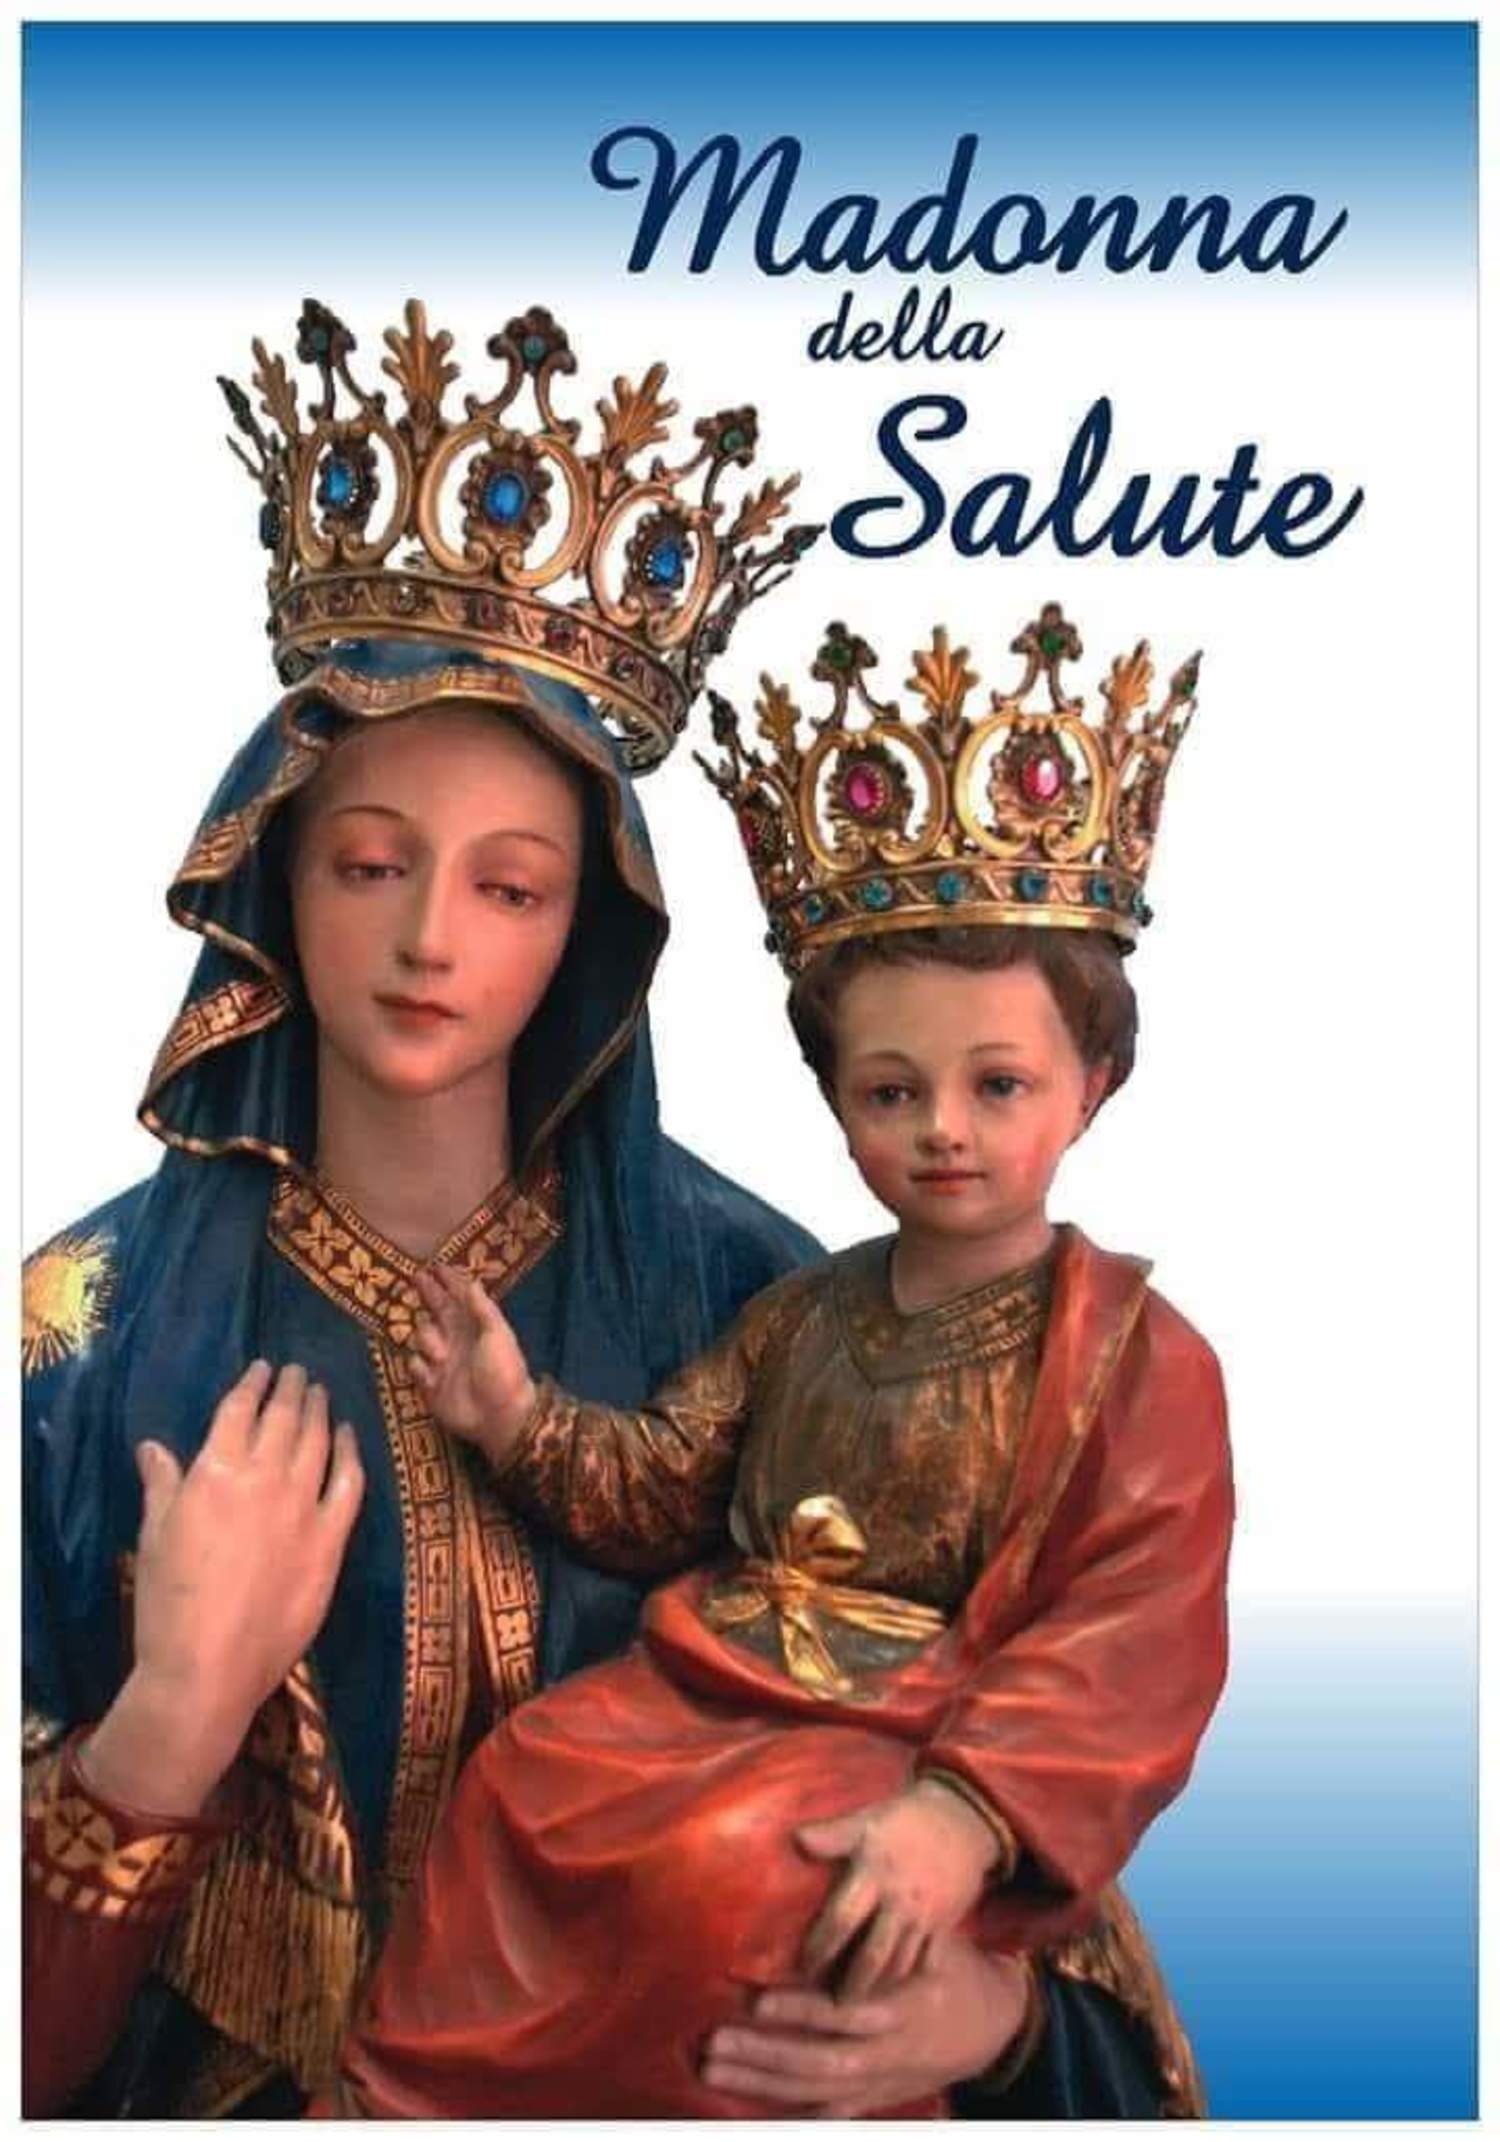 Preghiera alla Madonna della Salute.